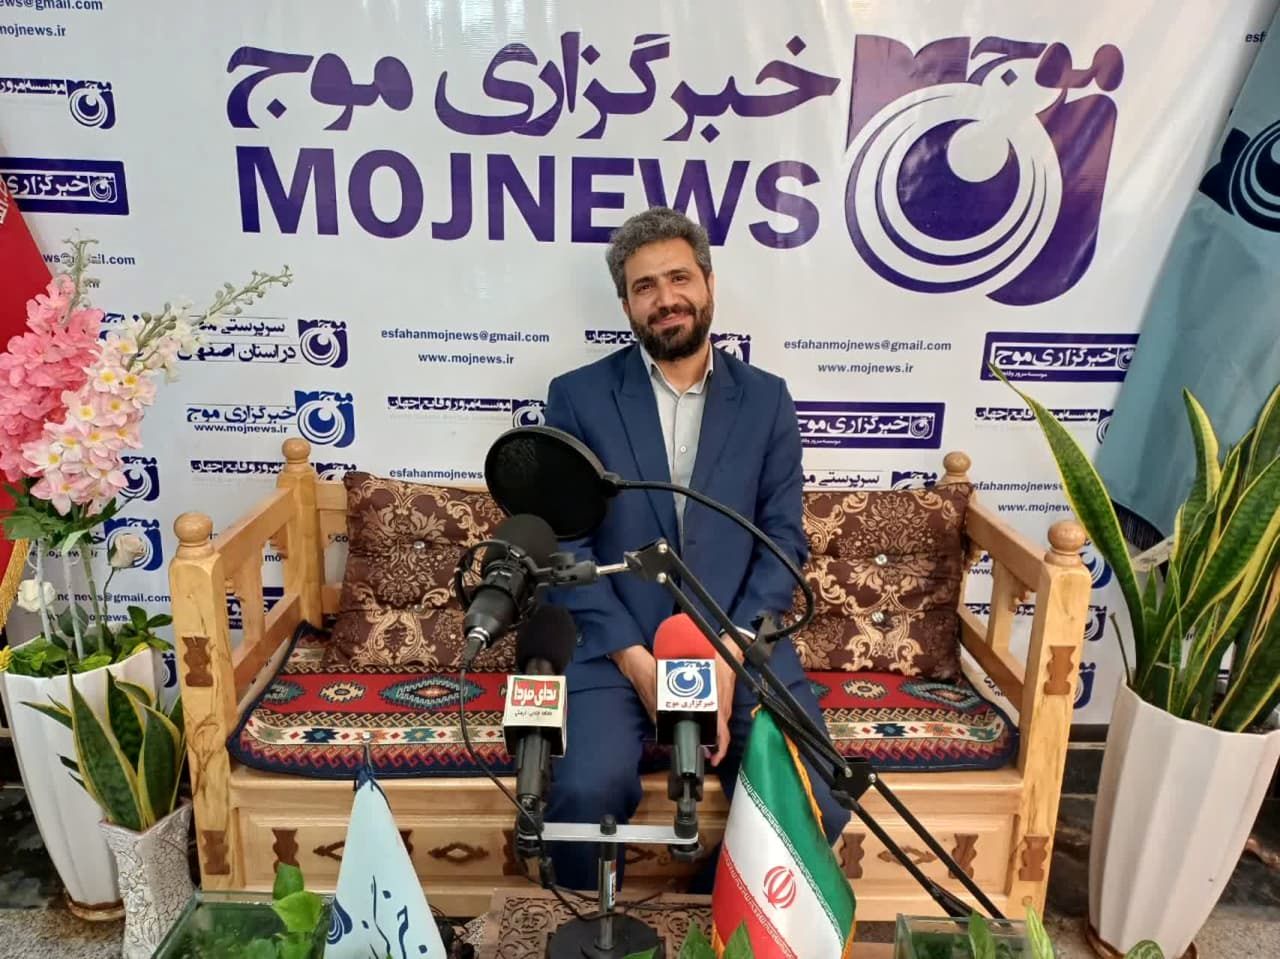 بازدید مدیر روابط عمومی دانشگاه اصفهان از خبرگزاری موج